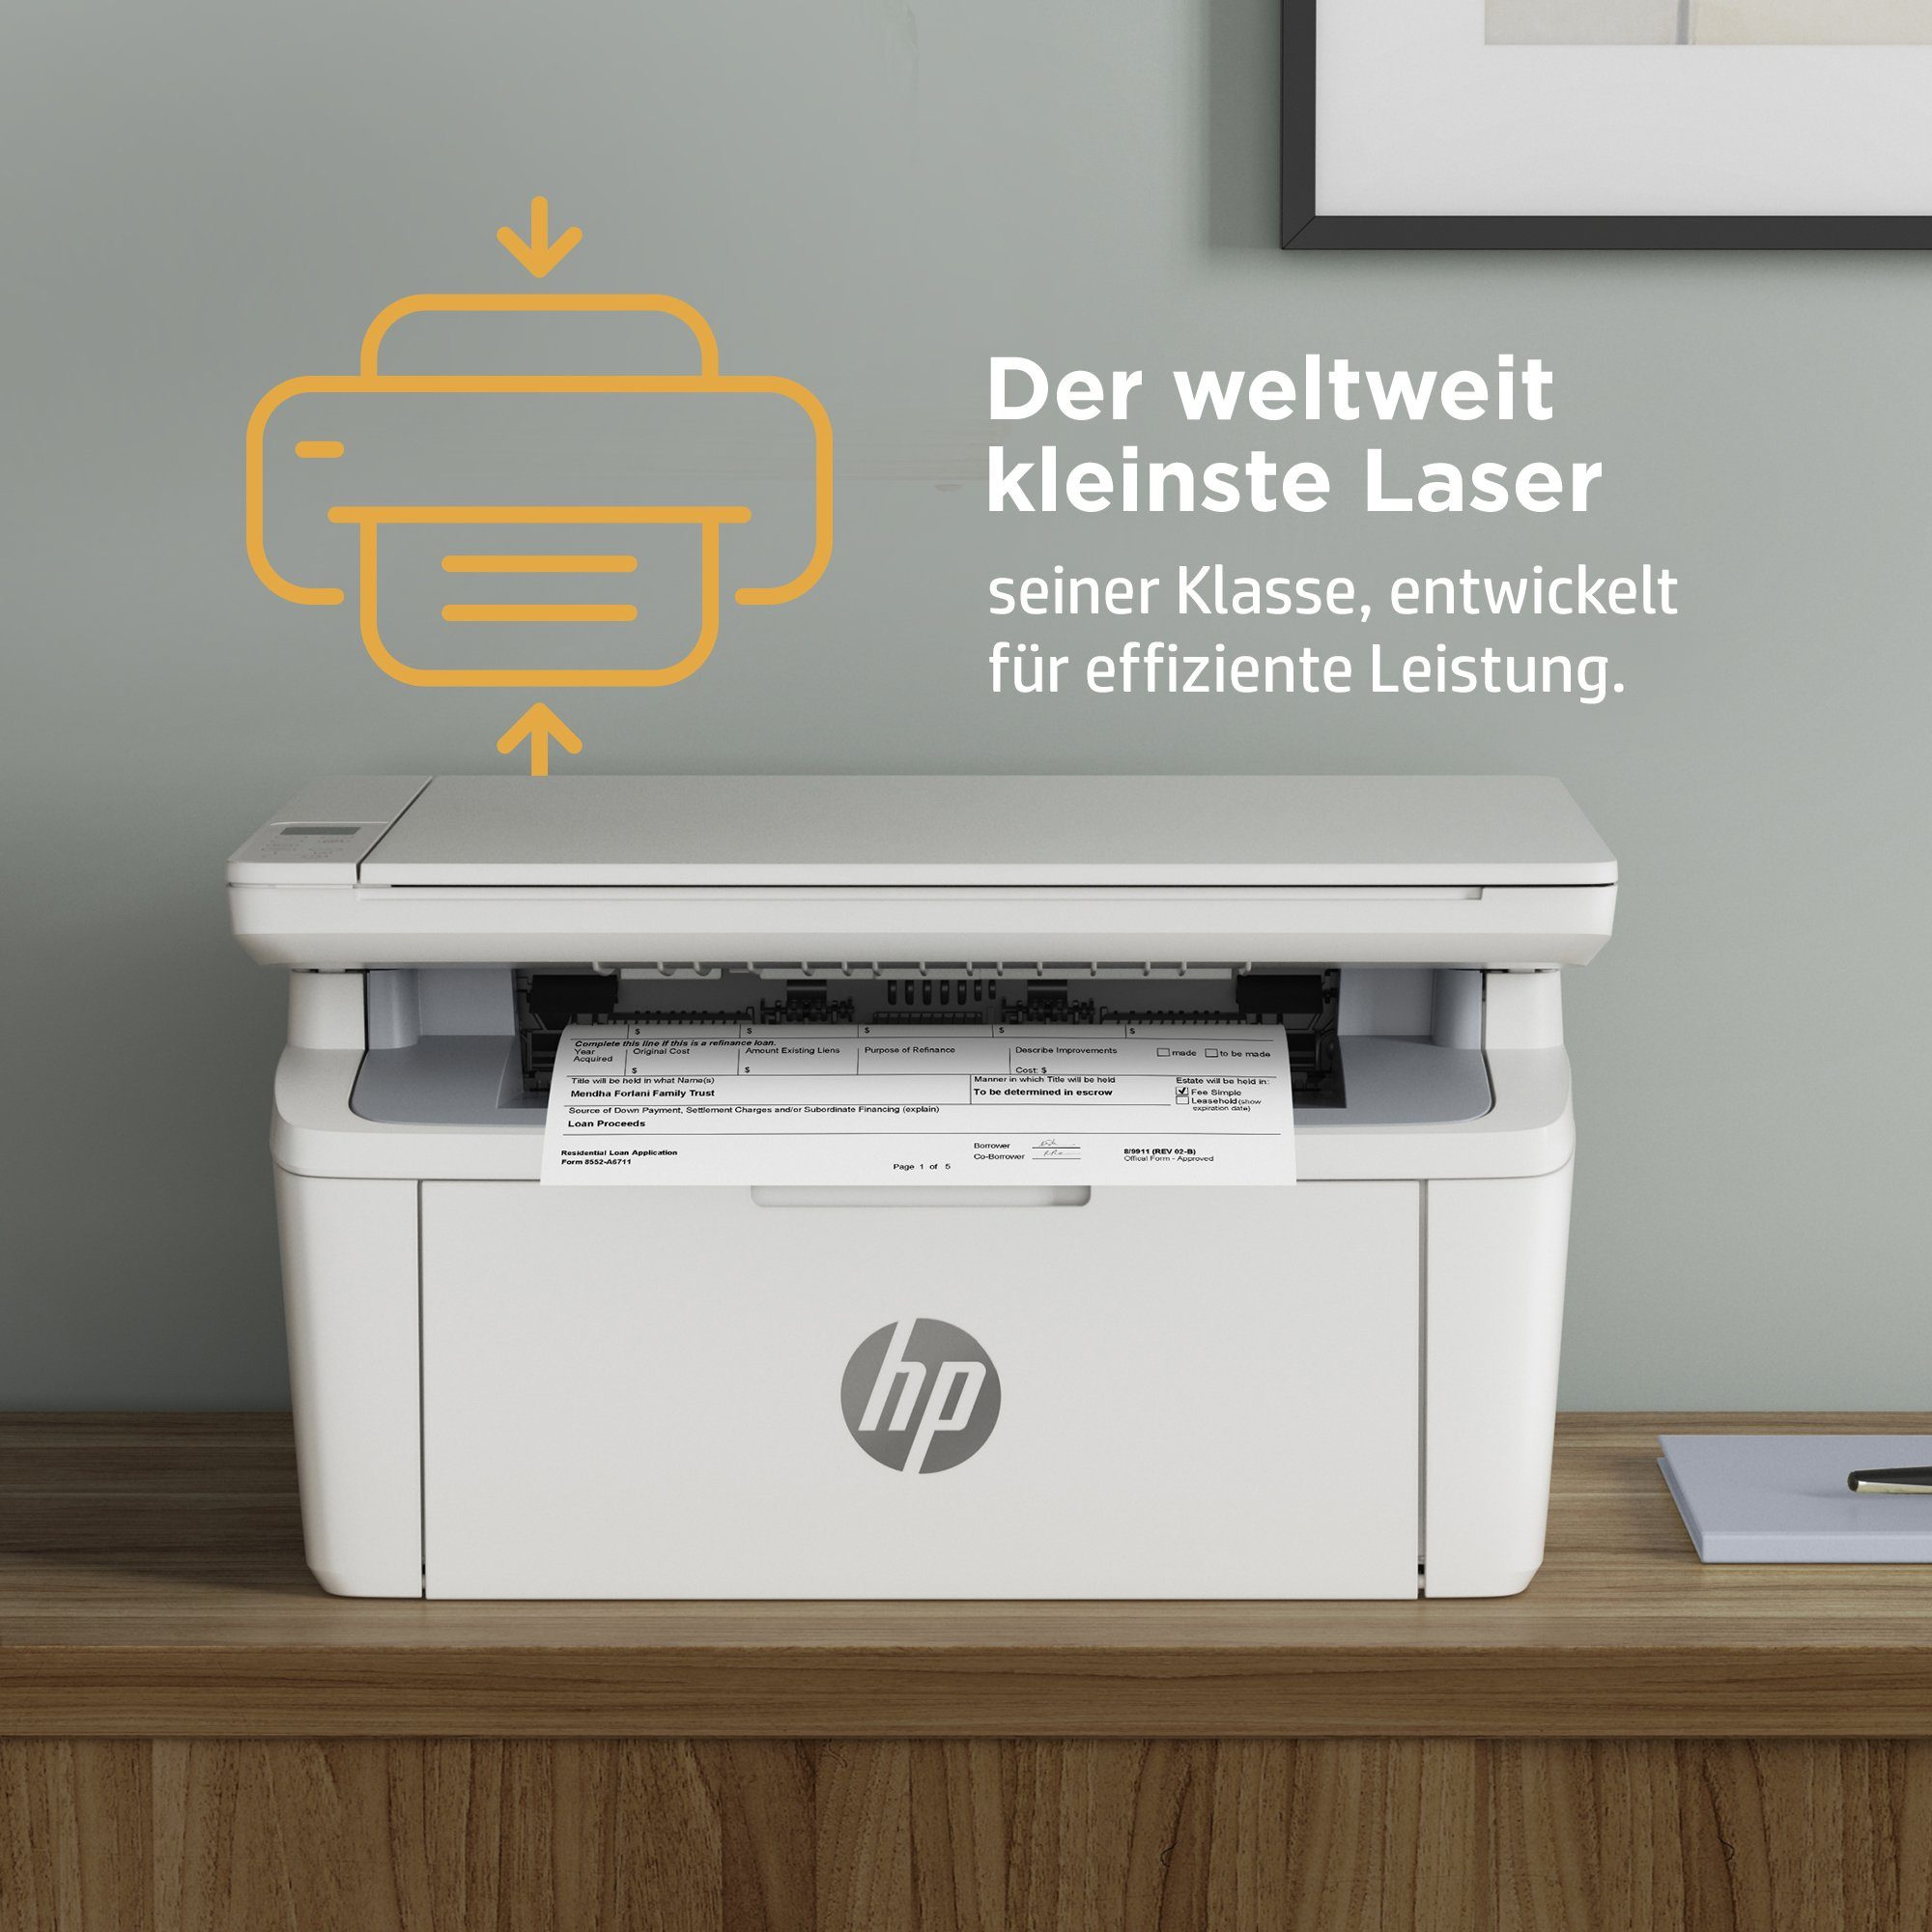 HP LaserJet MFP HP+ (Wi-Fi), Multifunktionsdrucker, (Bluetooth, kompatibel) M140we WLAN Instant Ink Drucker